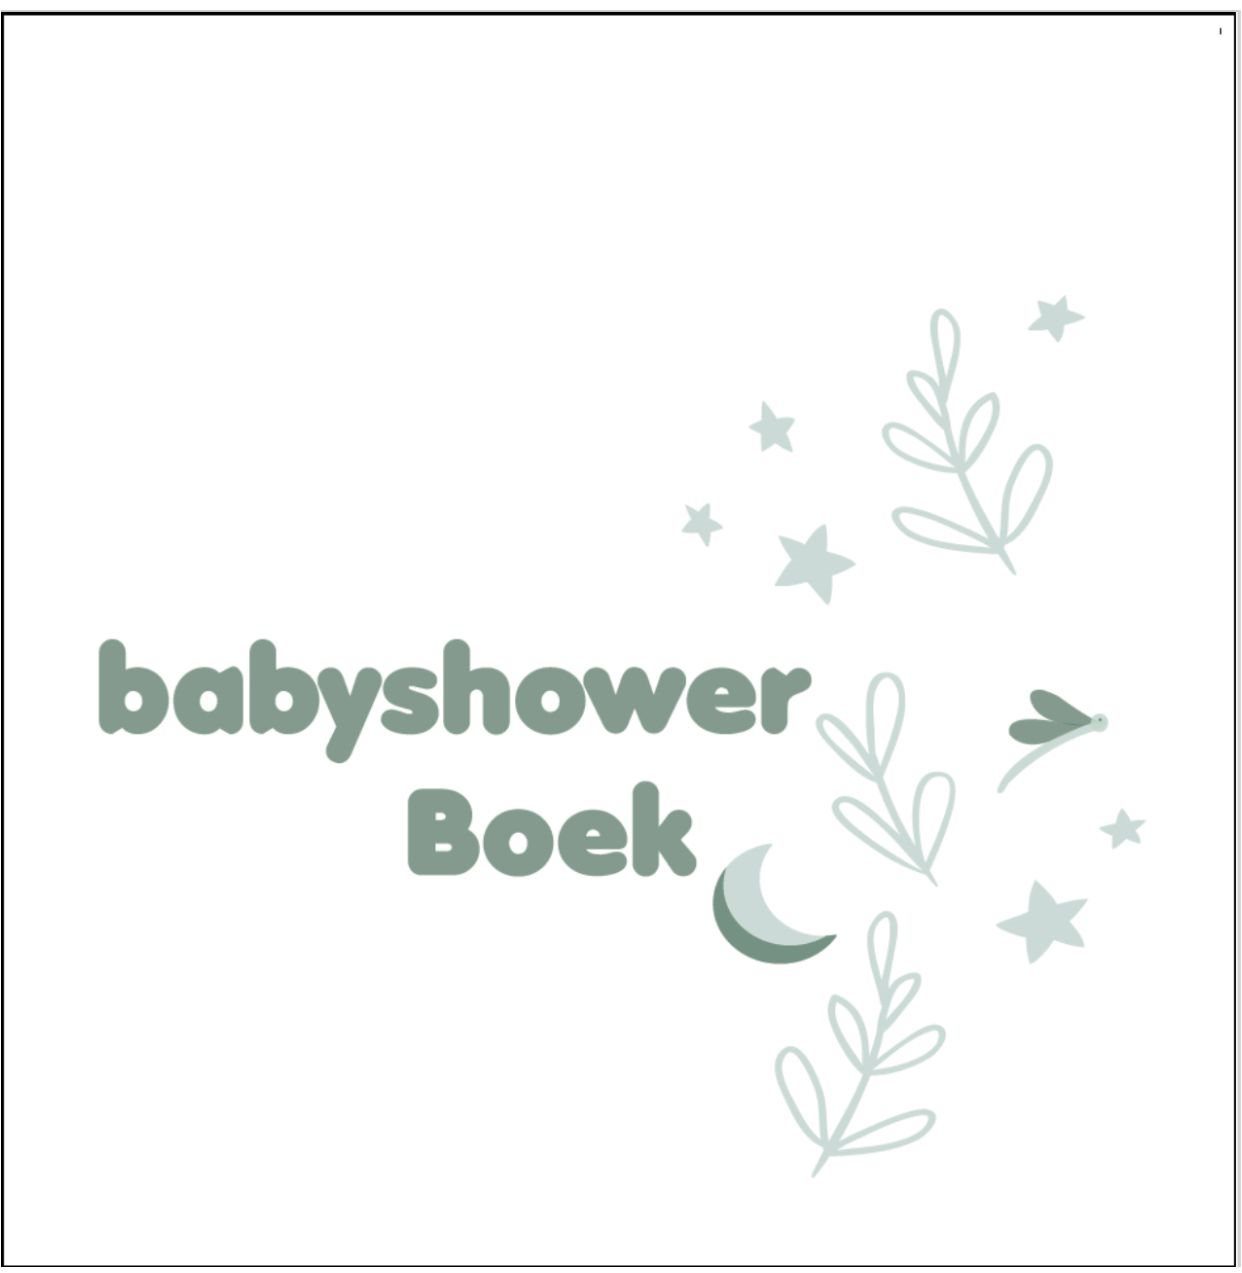 Babyshower Boek – White